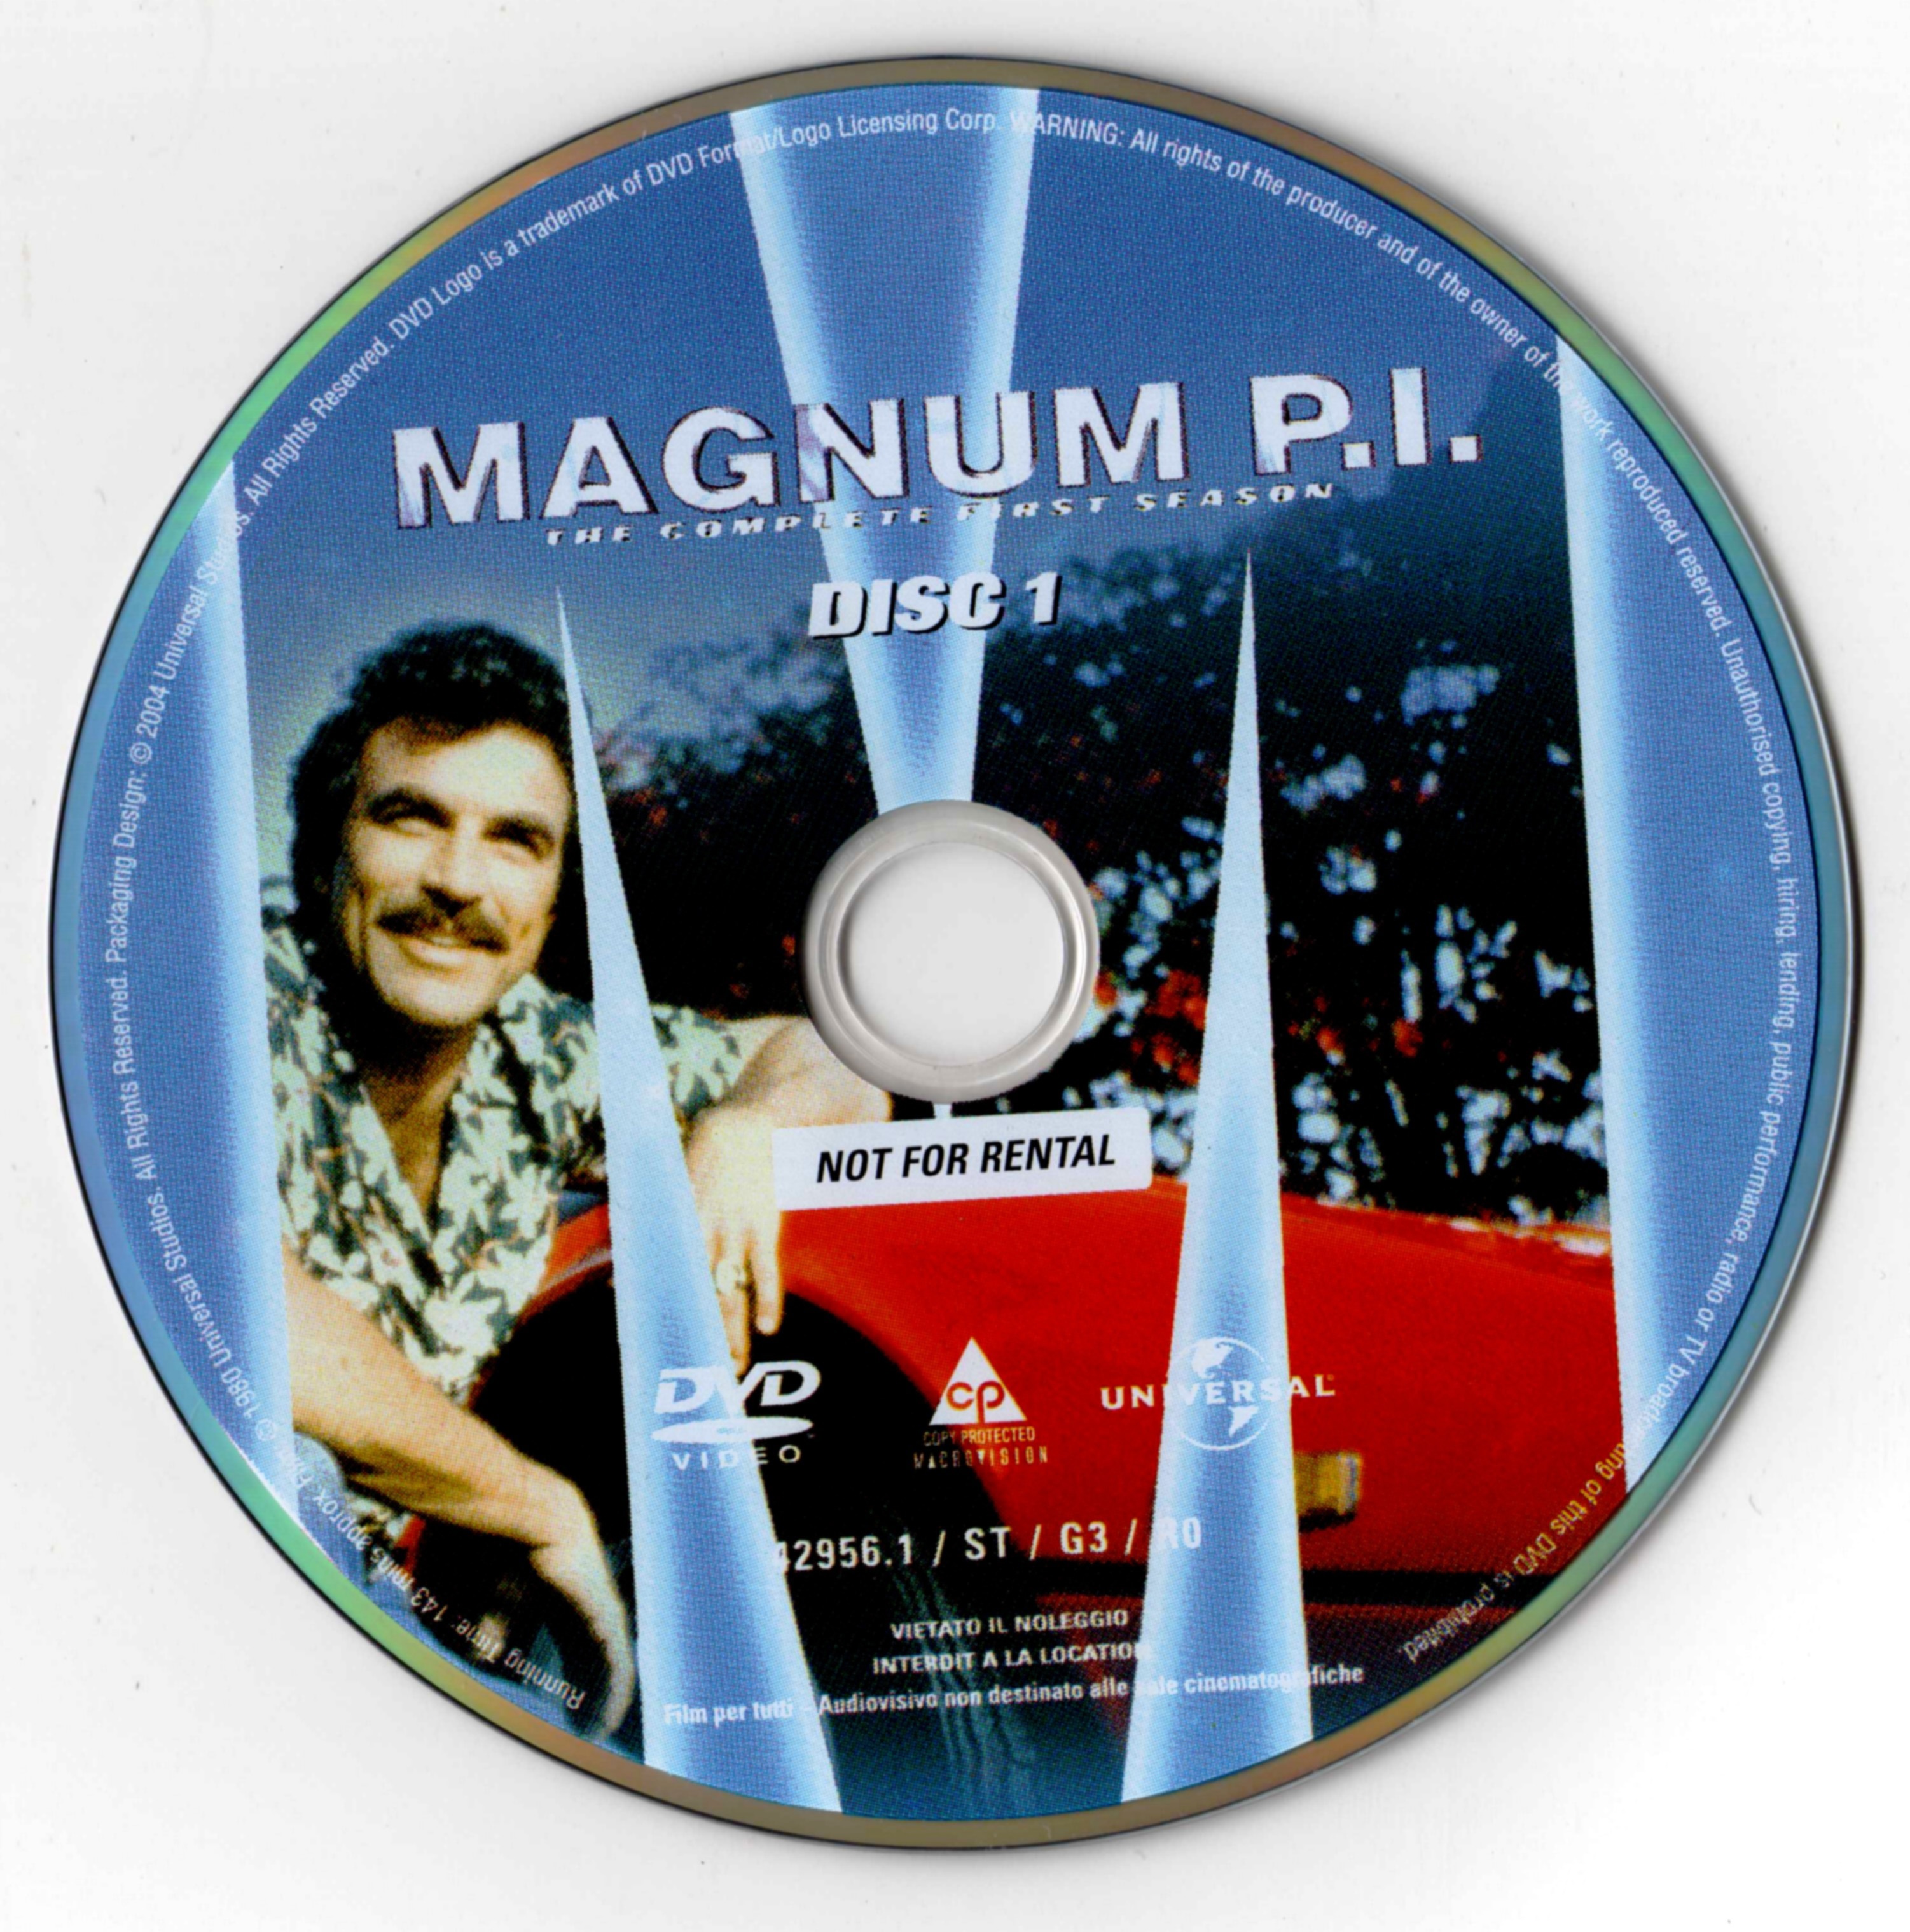 Magnum Saison 1 DISC 1